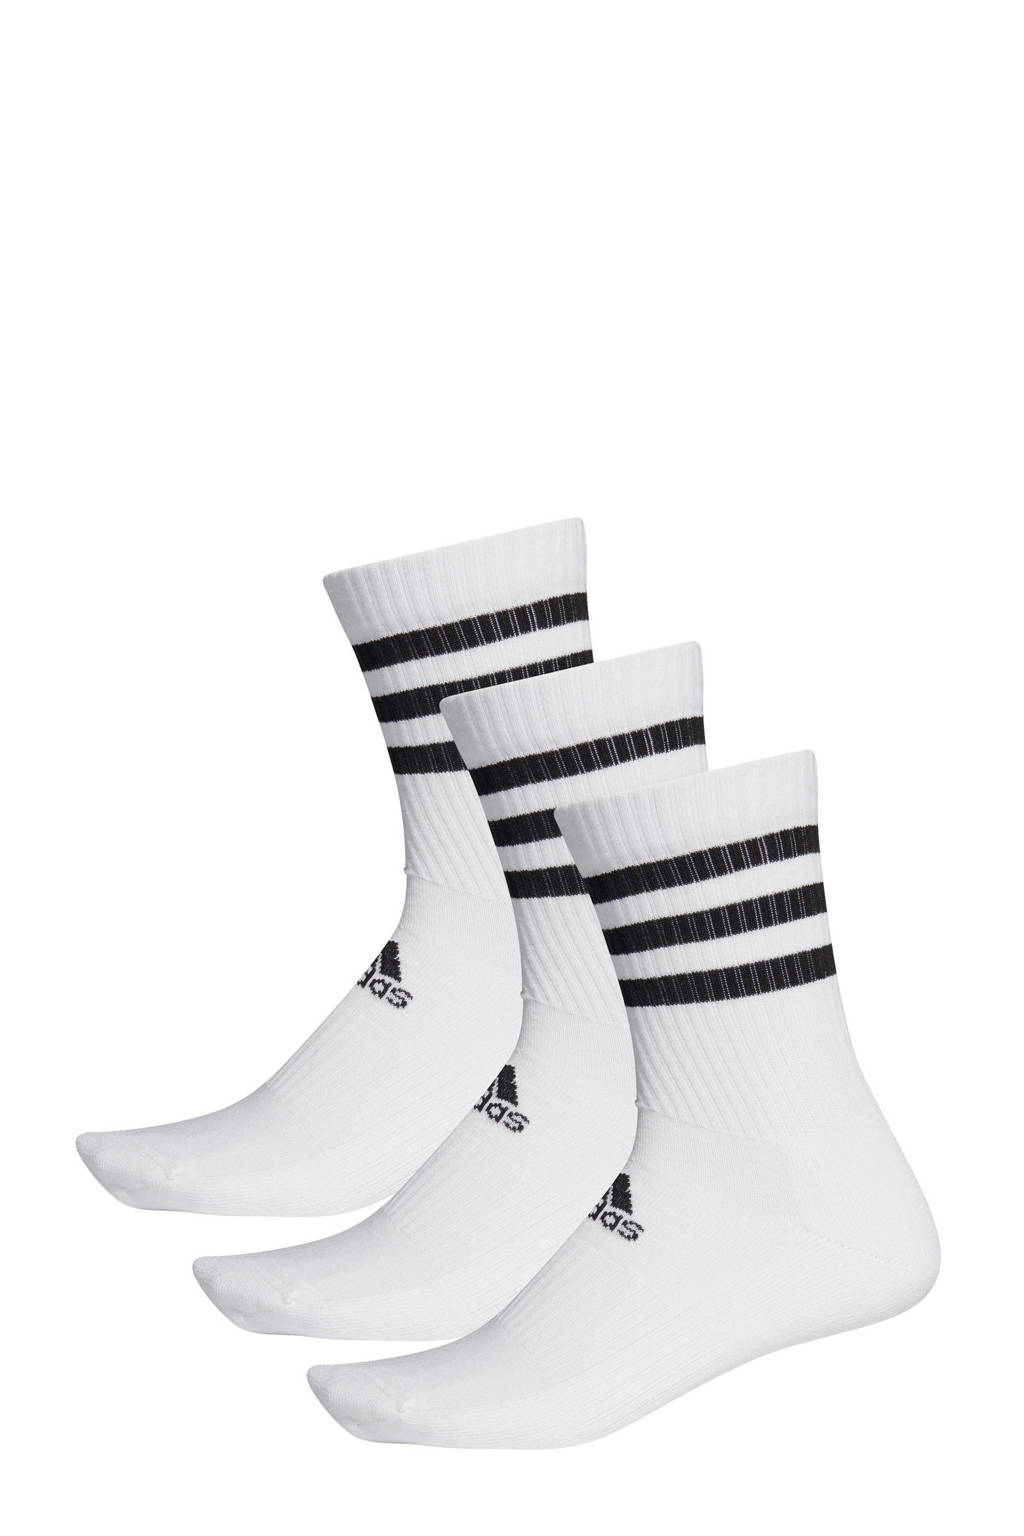 adidas - set van wit/zwart | wehkamp